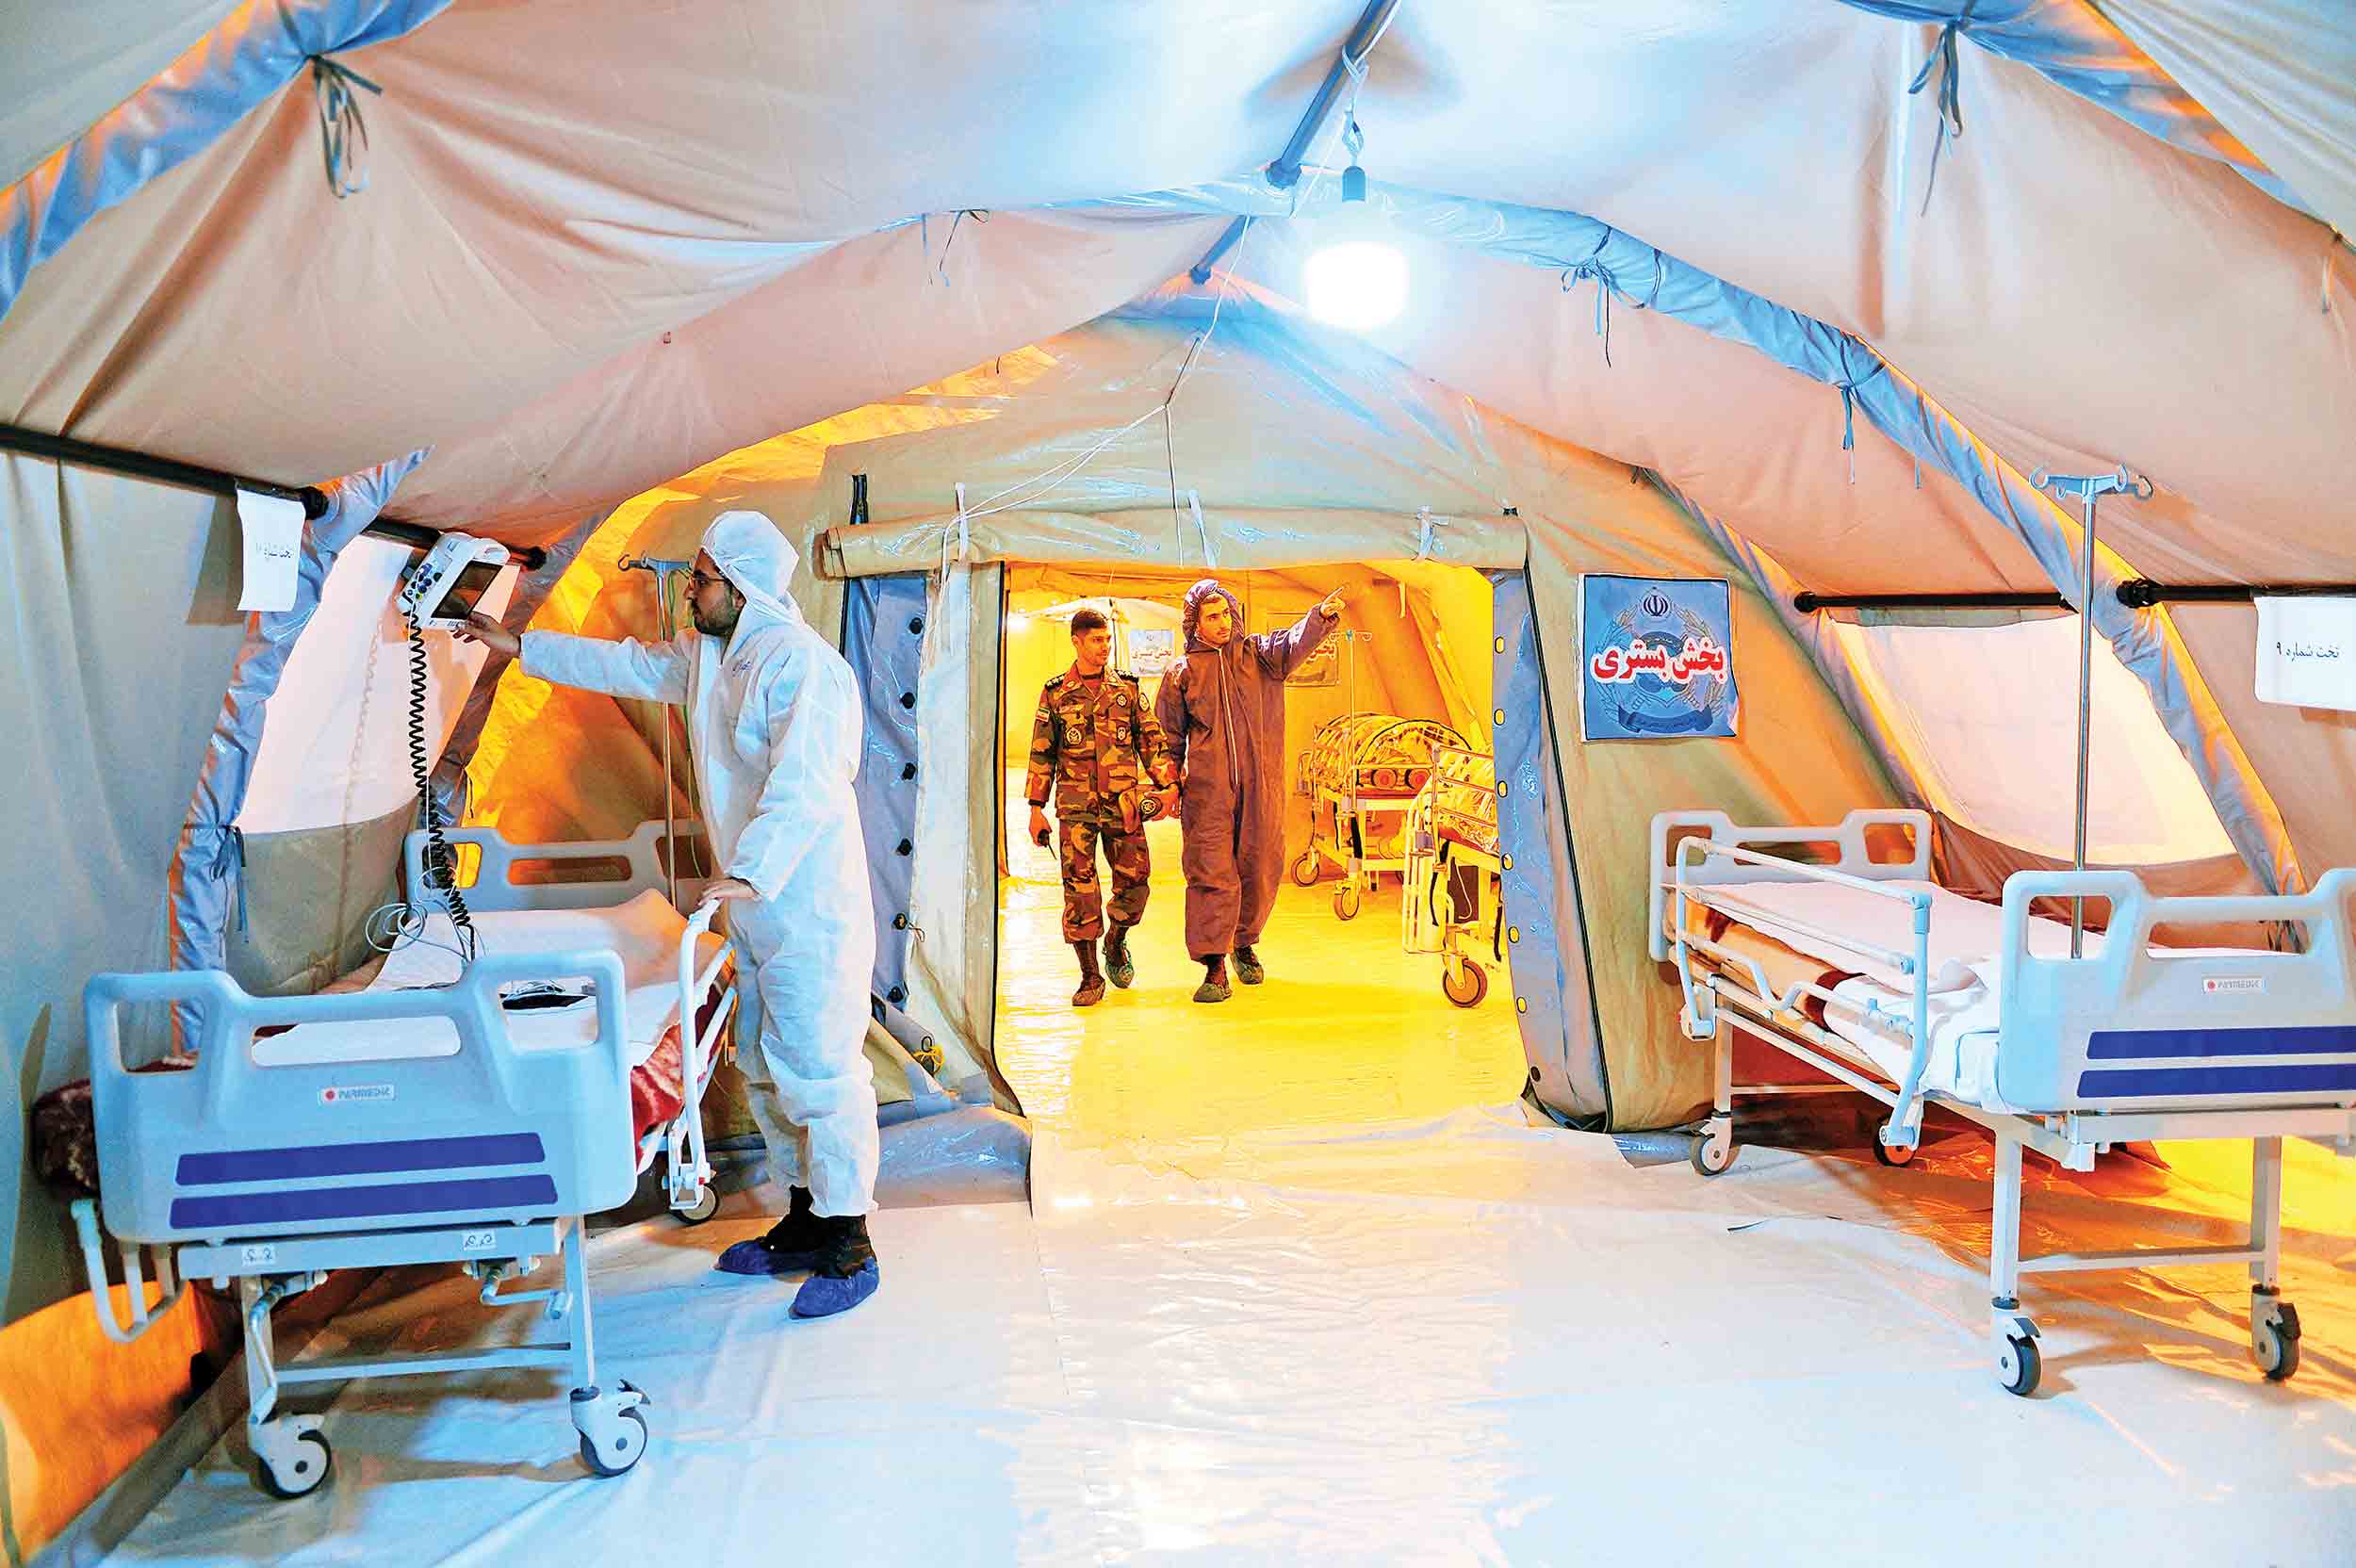 بیمارستان صحرایی کرونا در تهران؛ 40روز بعد